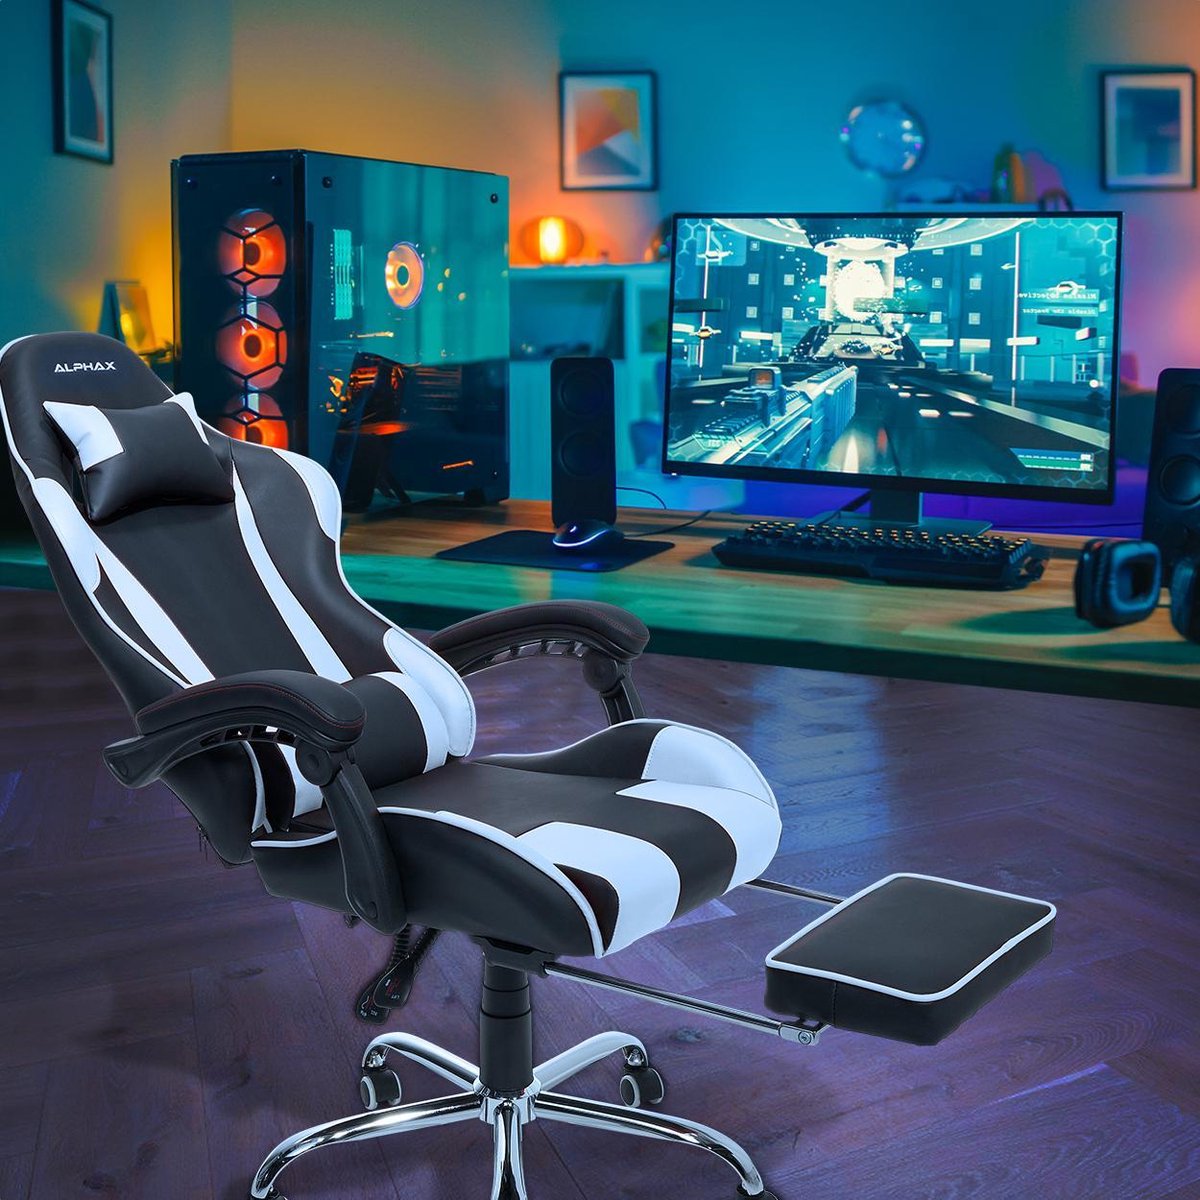 De AlphaX Gamestoel - Game bureaustoel van LifeGoods